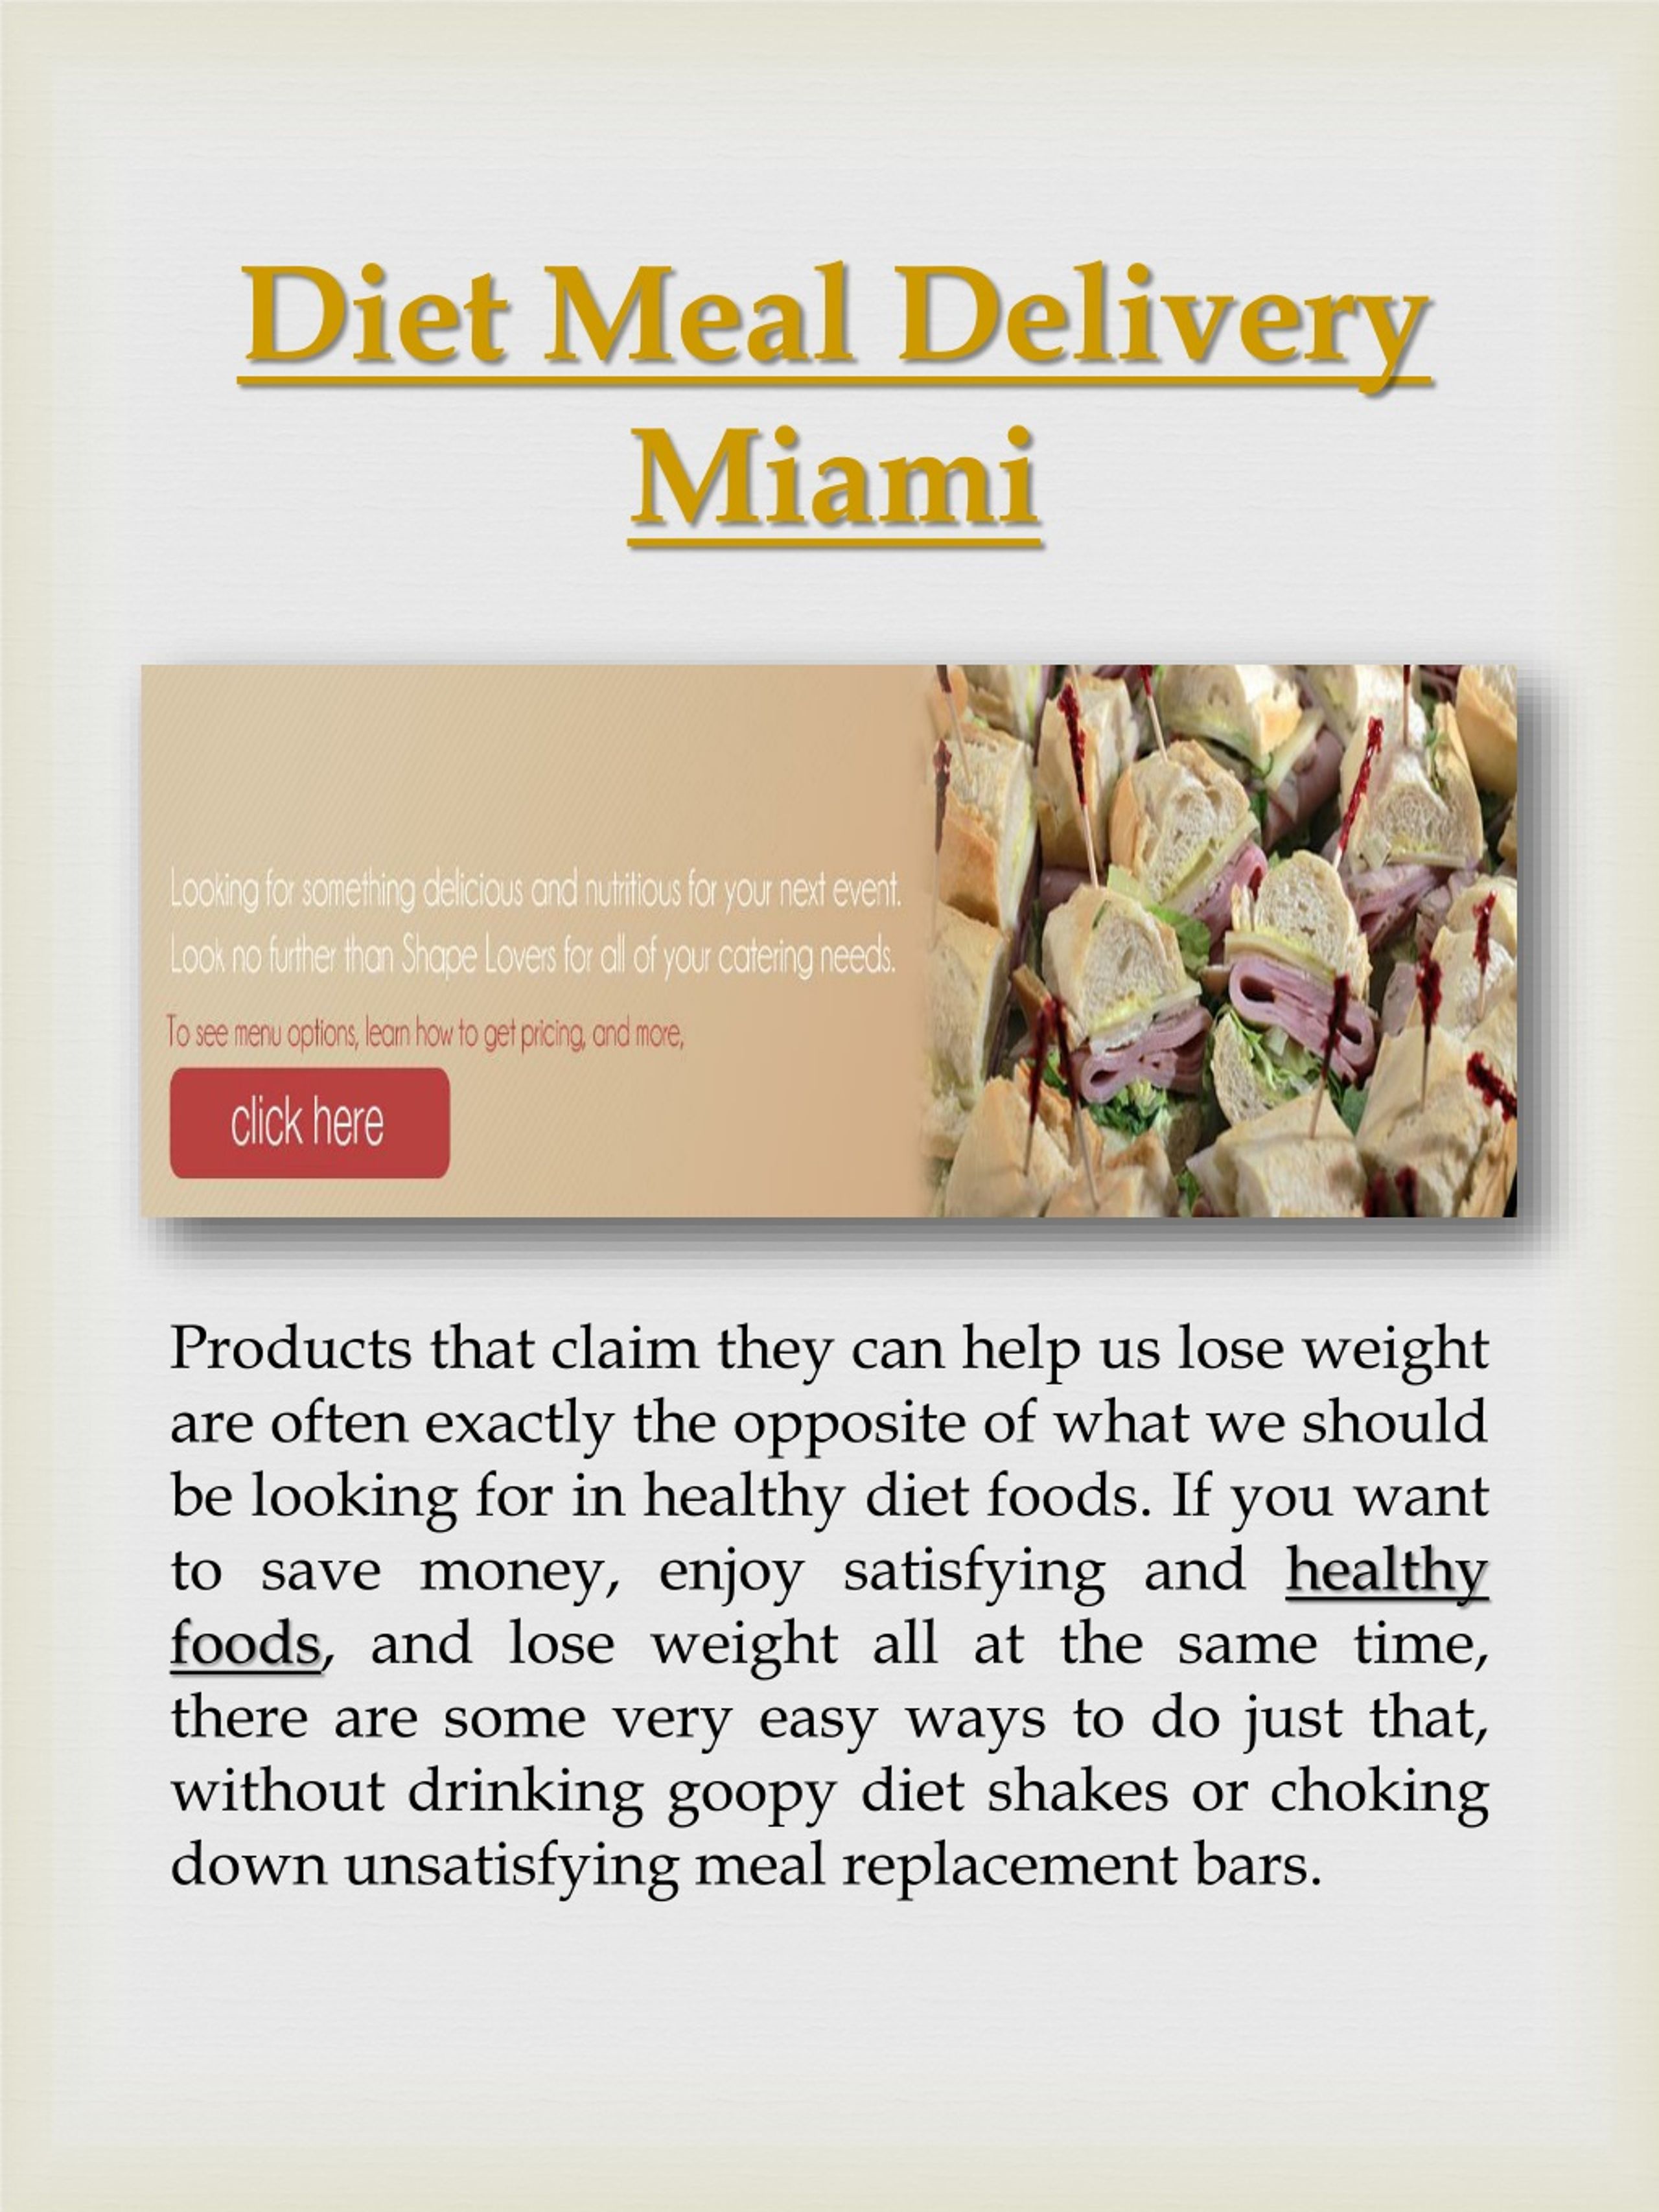 https://image4.slideserve.com/1497835/diet-meal-delivery-miami-l.jpg